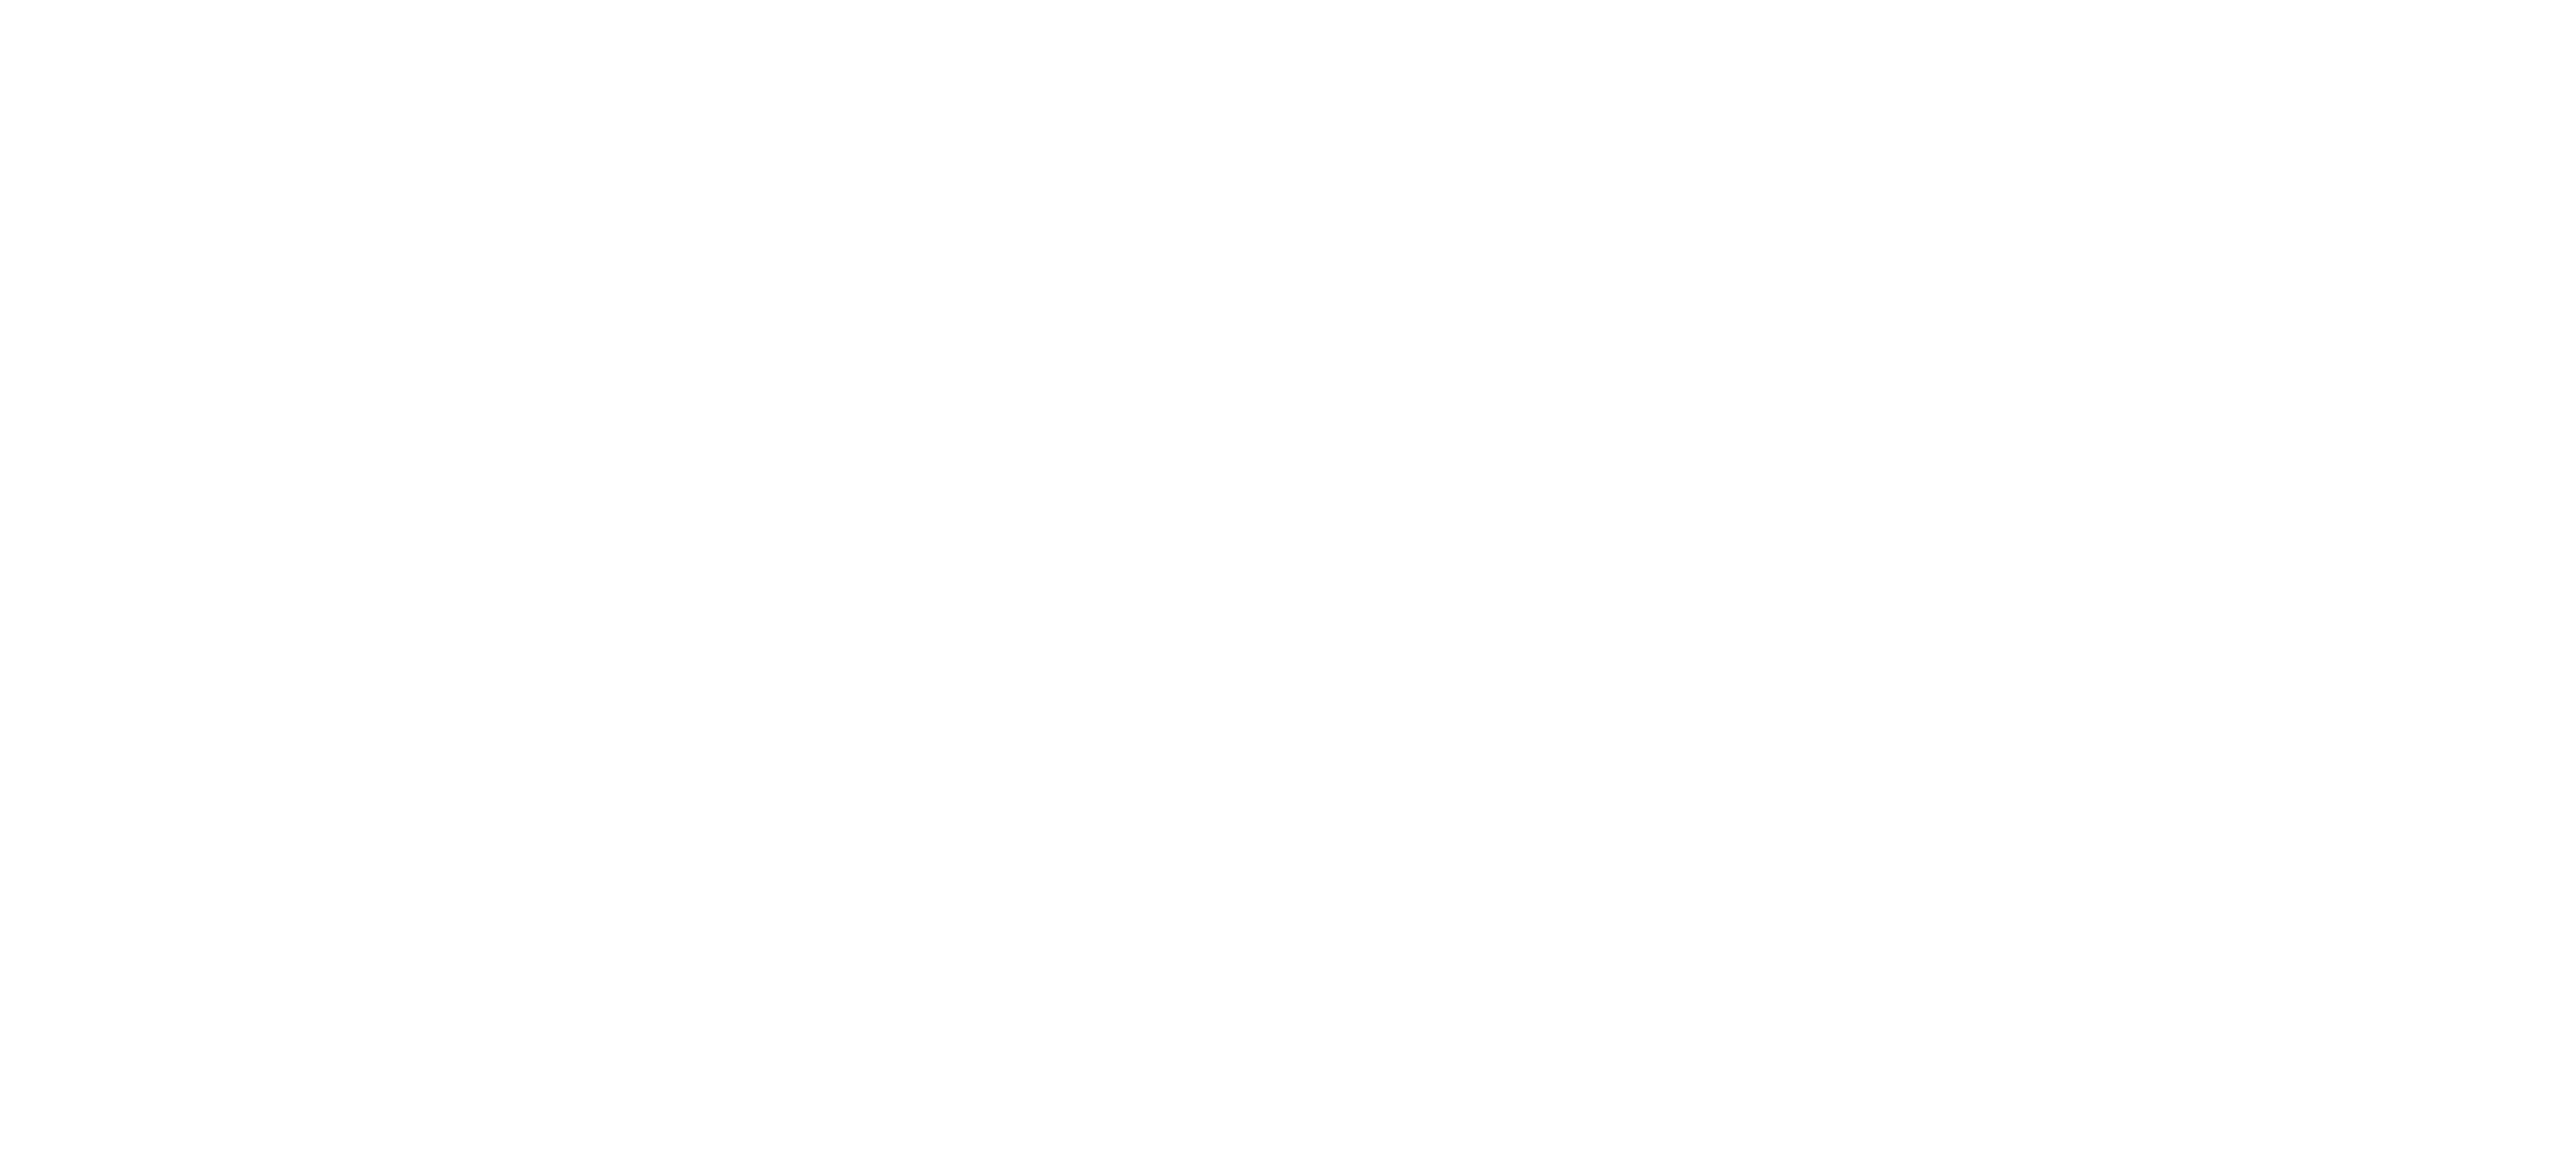 The London Ceilidh Club